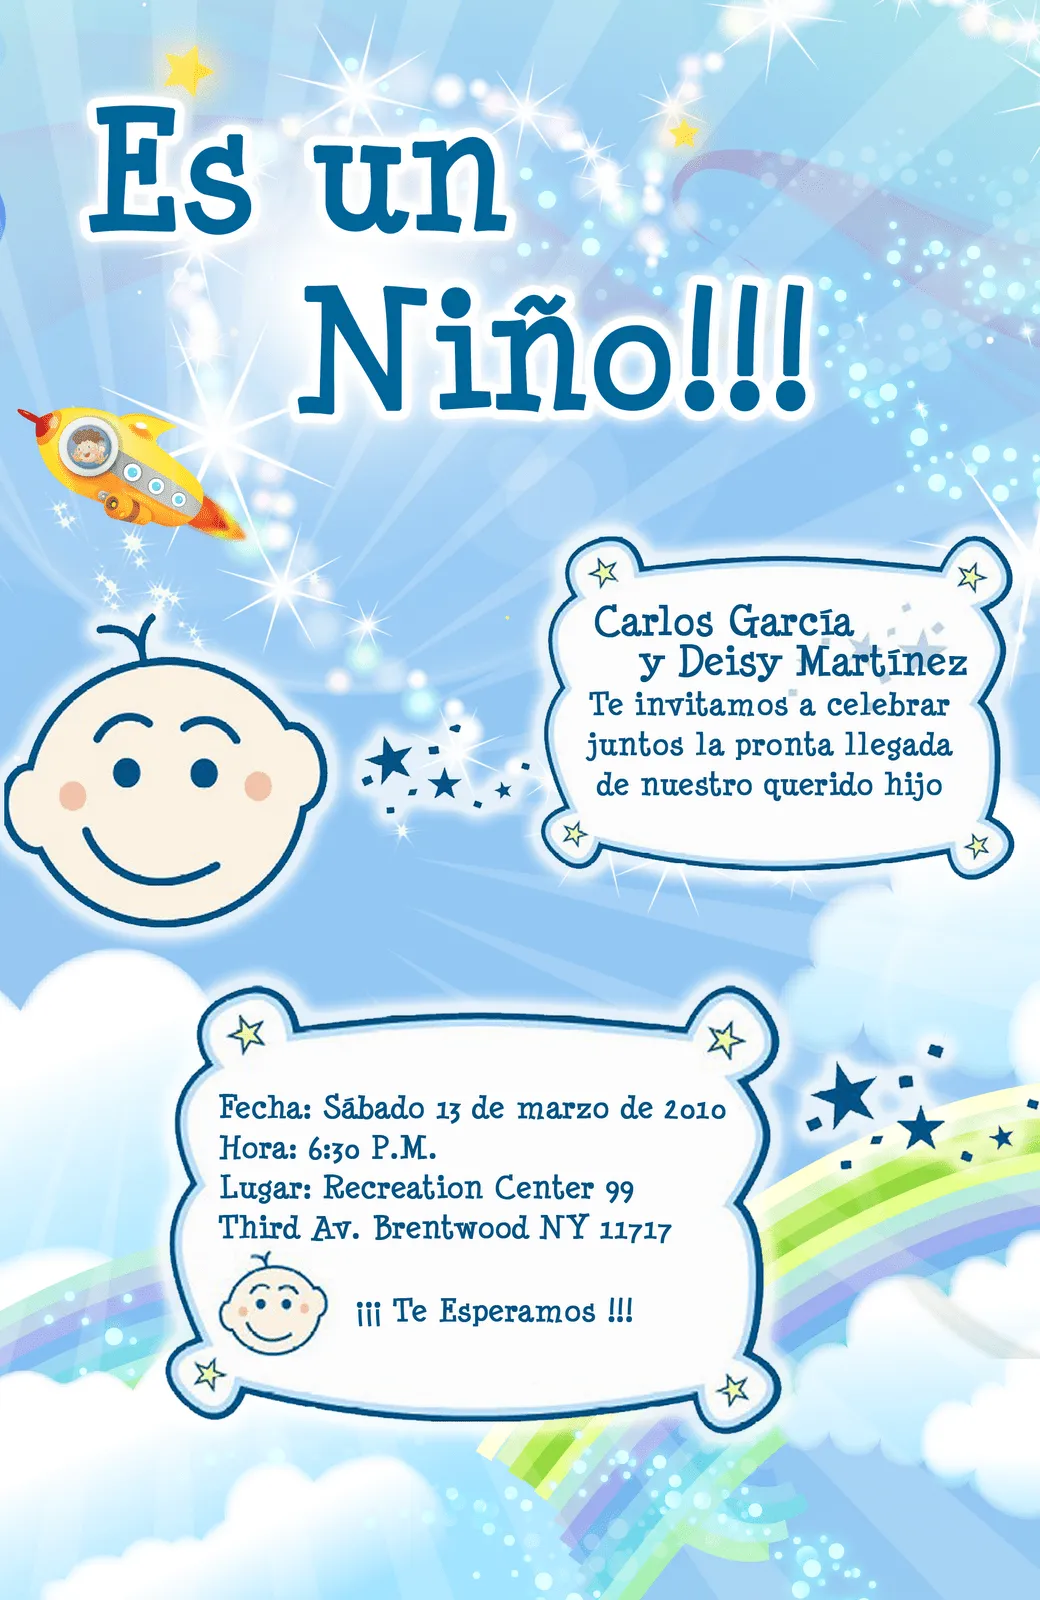 Mensajes para tarjeta de invitación baby shower - Imagui